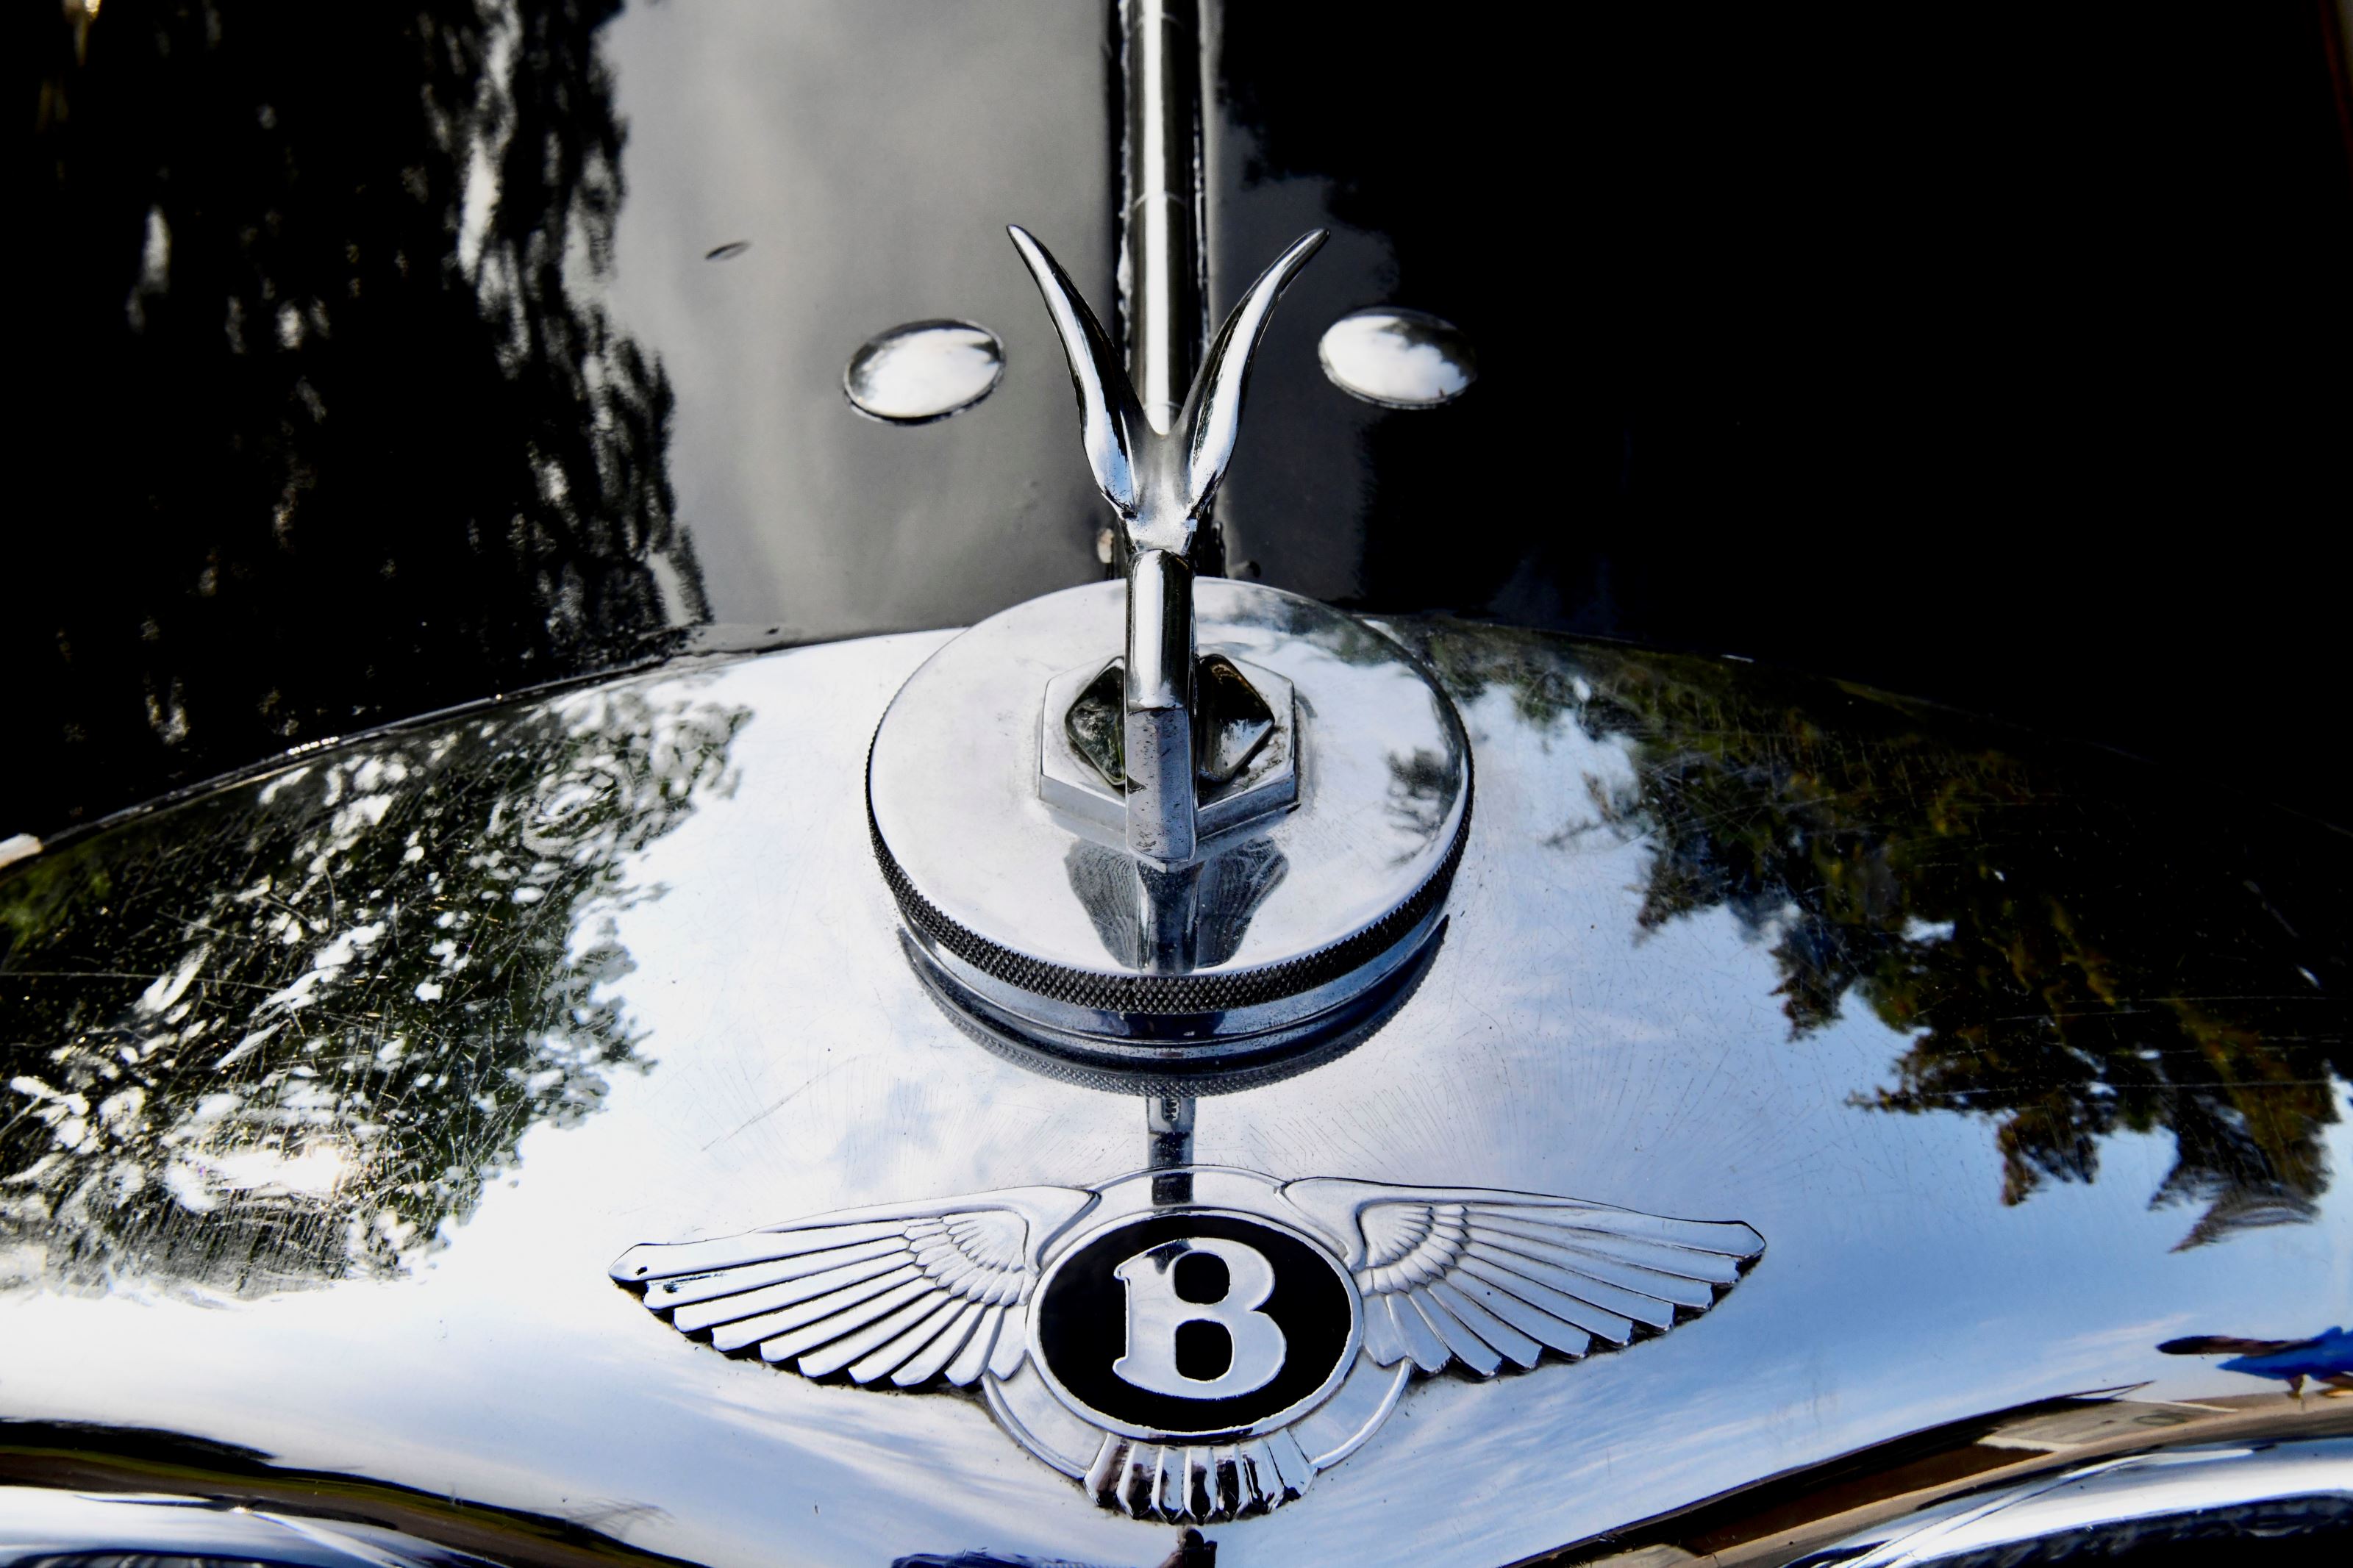 Bentley 425 litre park ward sports saloon xglk0rnlqjhu5ezsrw0b 